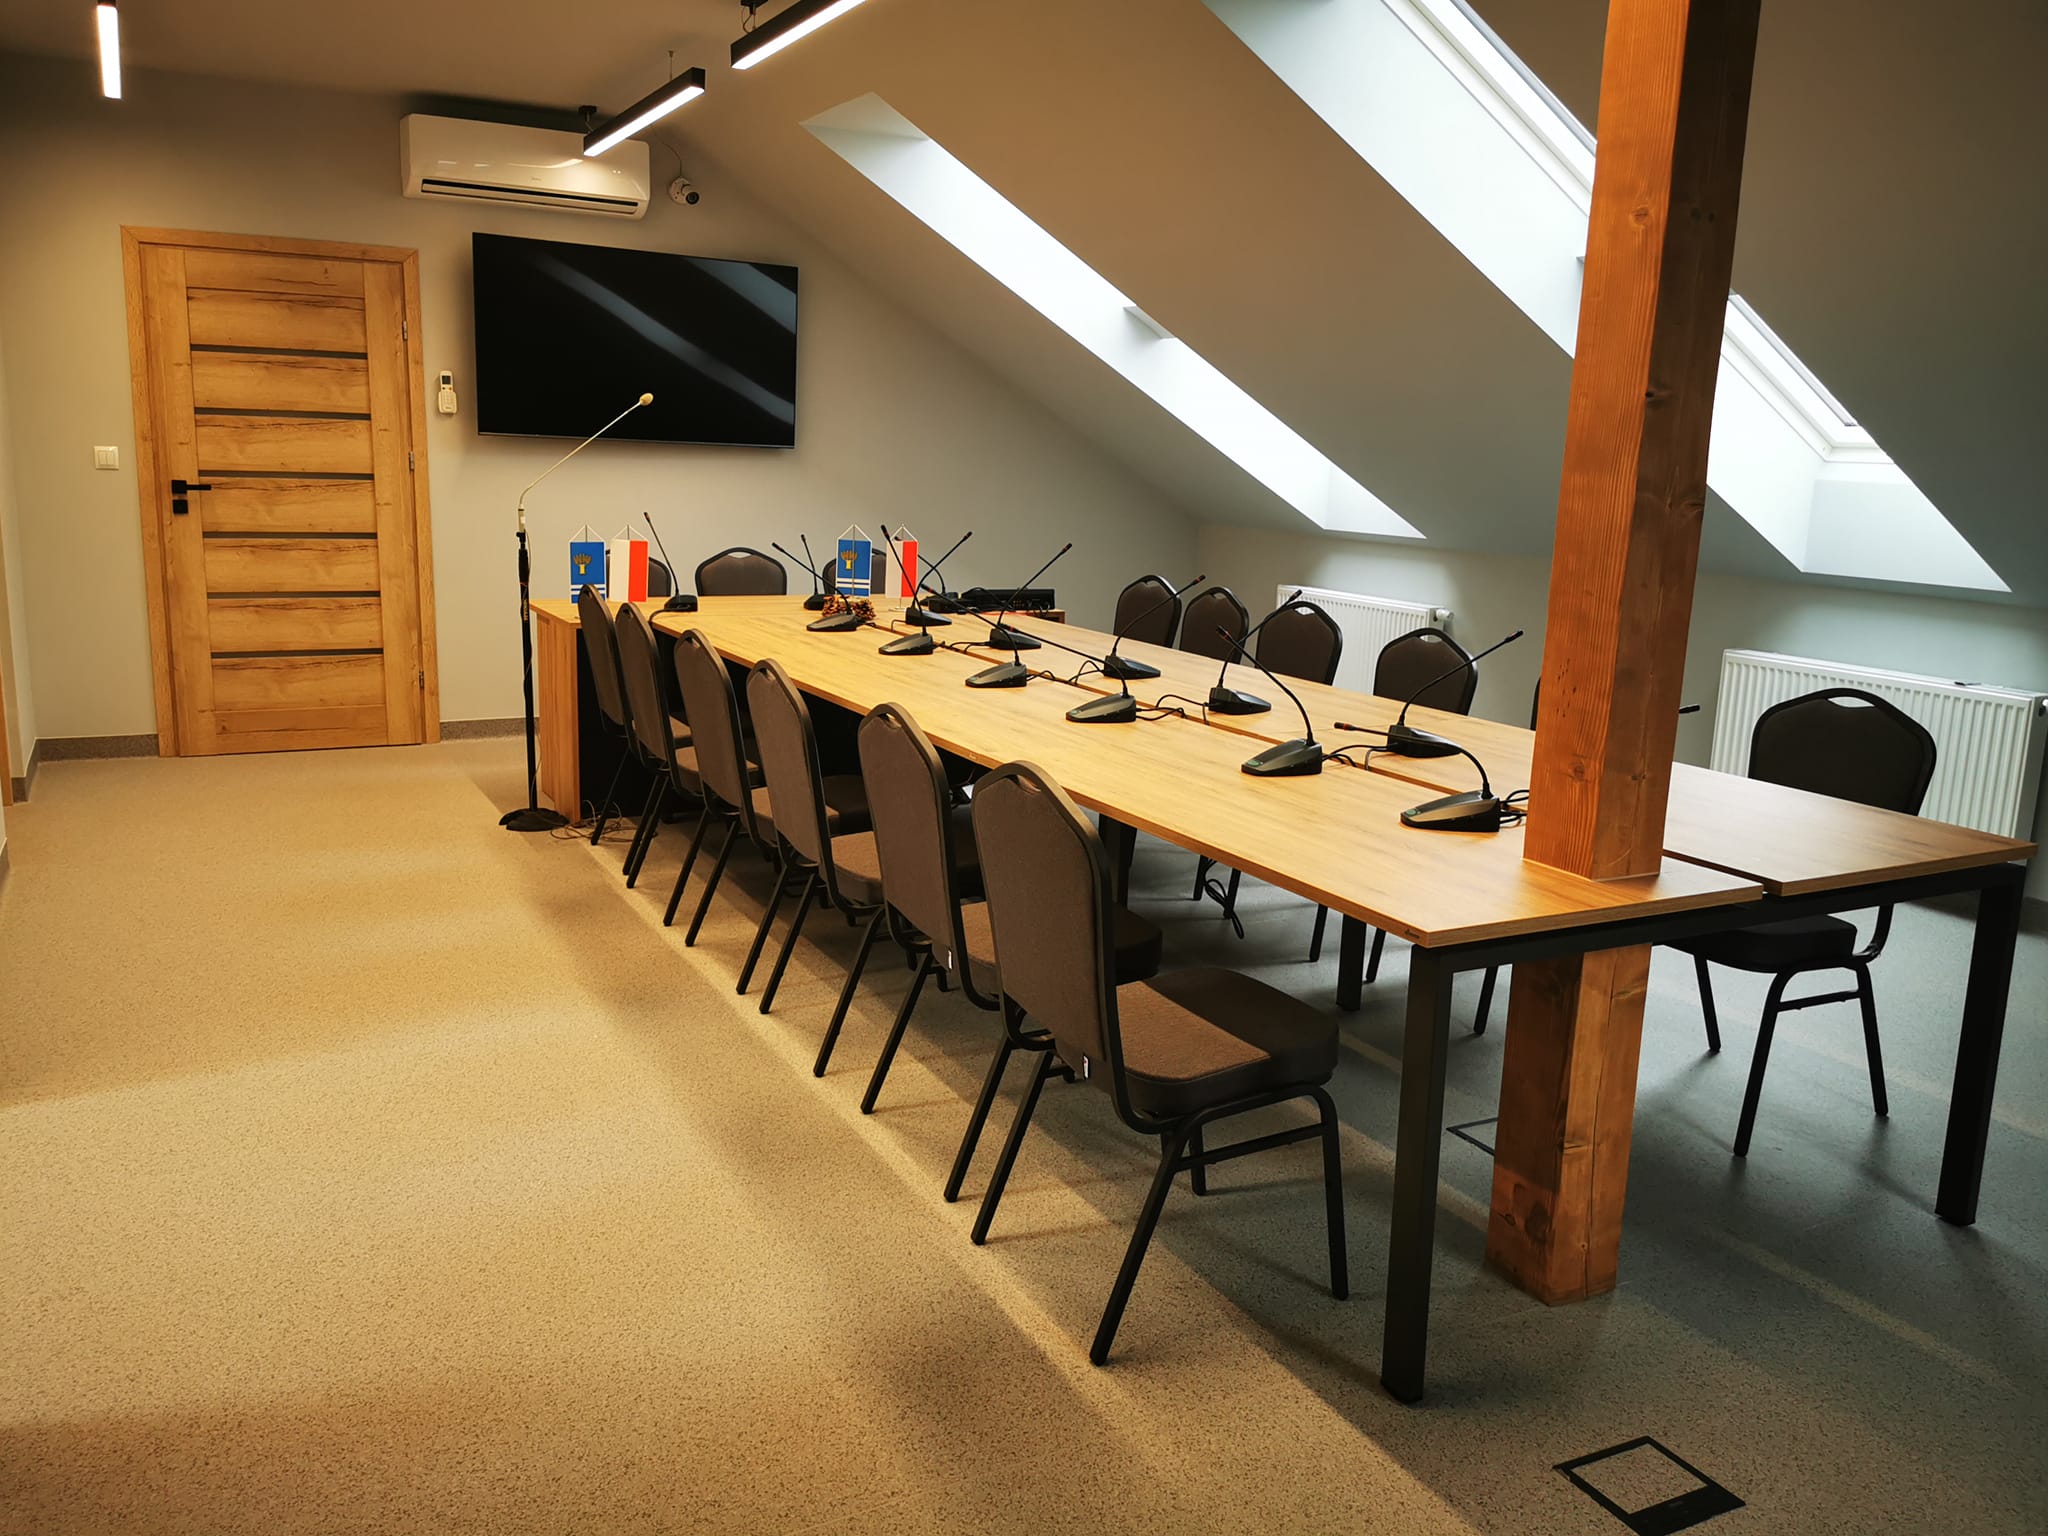 zdjęcie przedstawia duży stół oraz krzesła wokół niego w nowej sali konferencyjnej